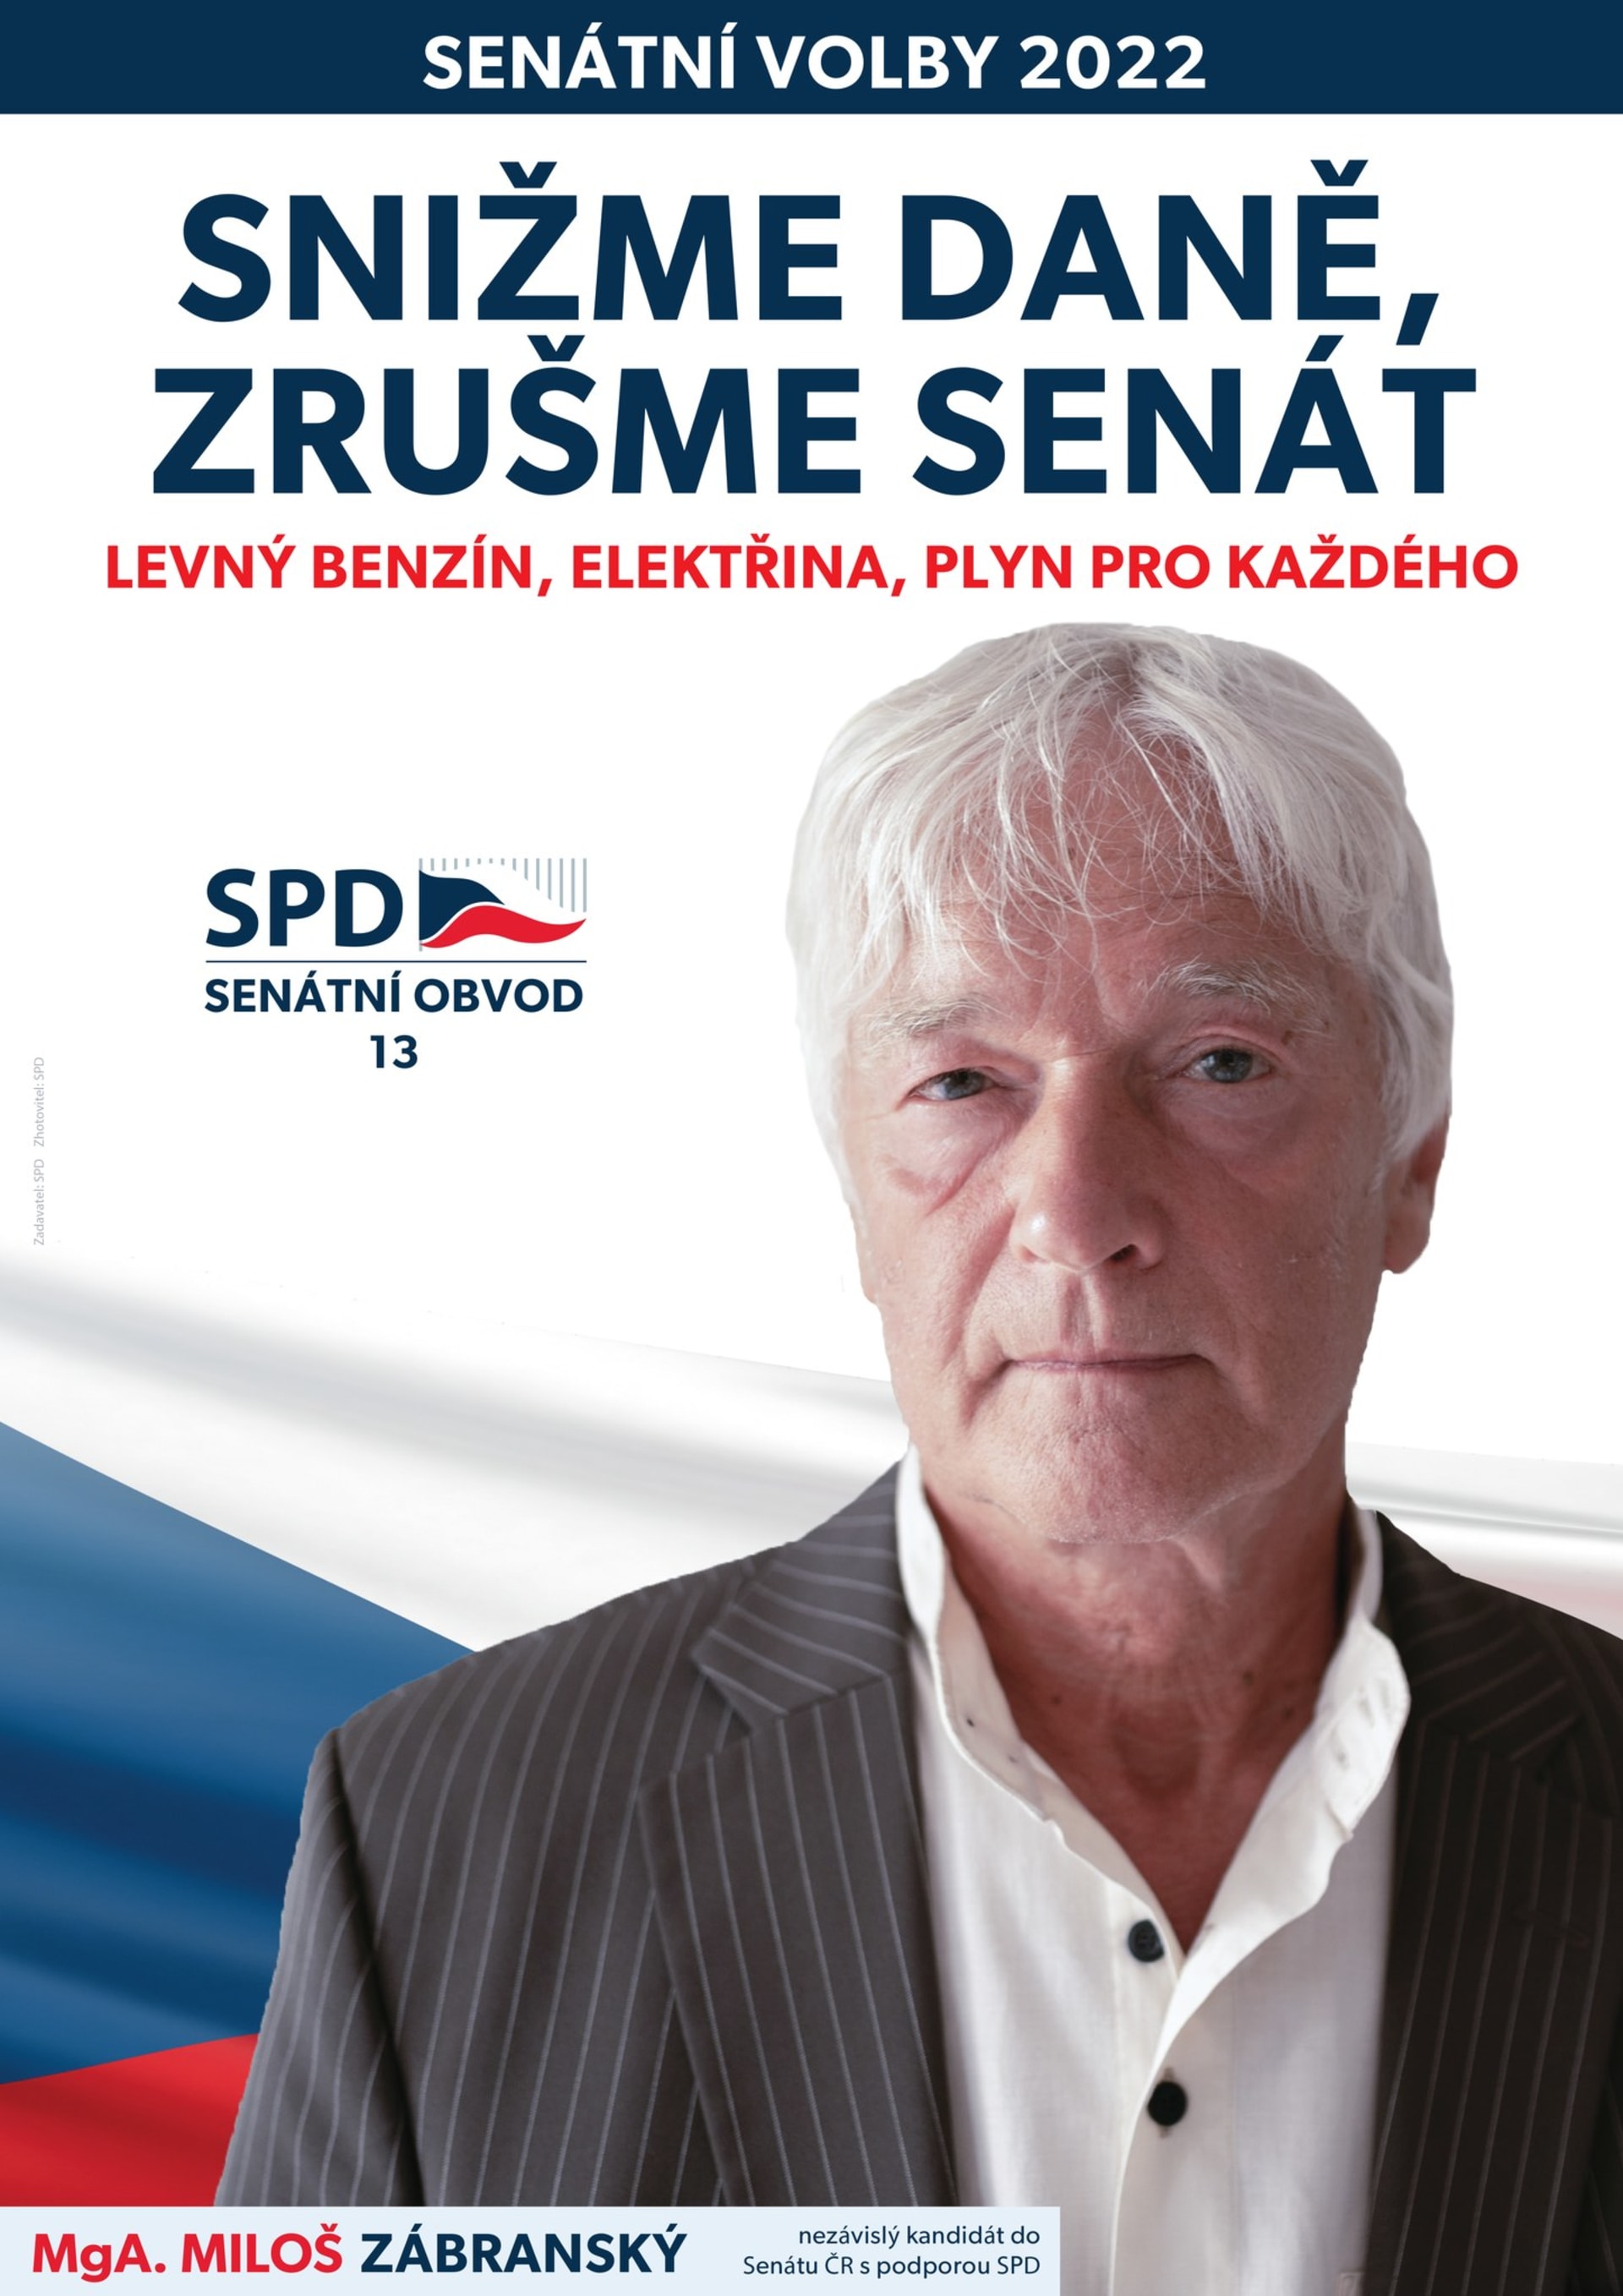 Zvláštně může působit slogan u plakátu kandidáta SPD do Senátu Miloše Zábranského. Ačkoliv do Senátu kandiduje, má na plakátu napsáno jako jeden ze svých slibů „Zrušme Senát“.